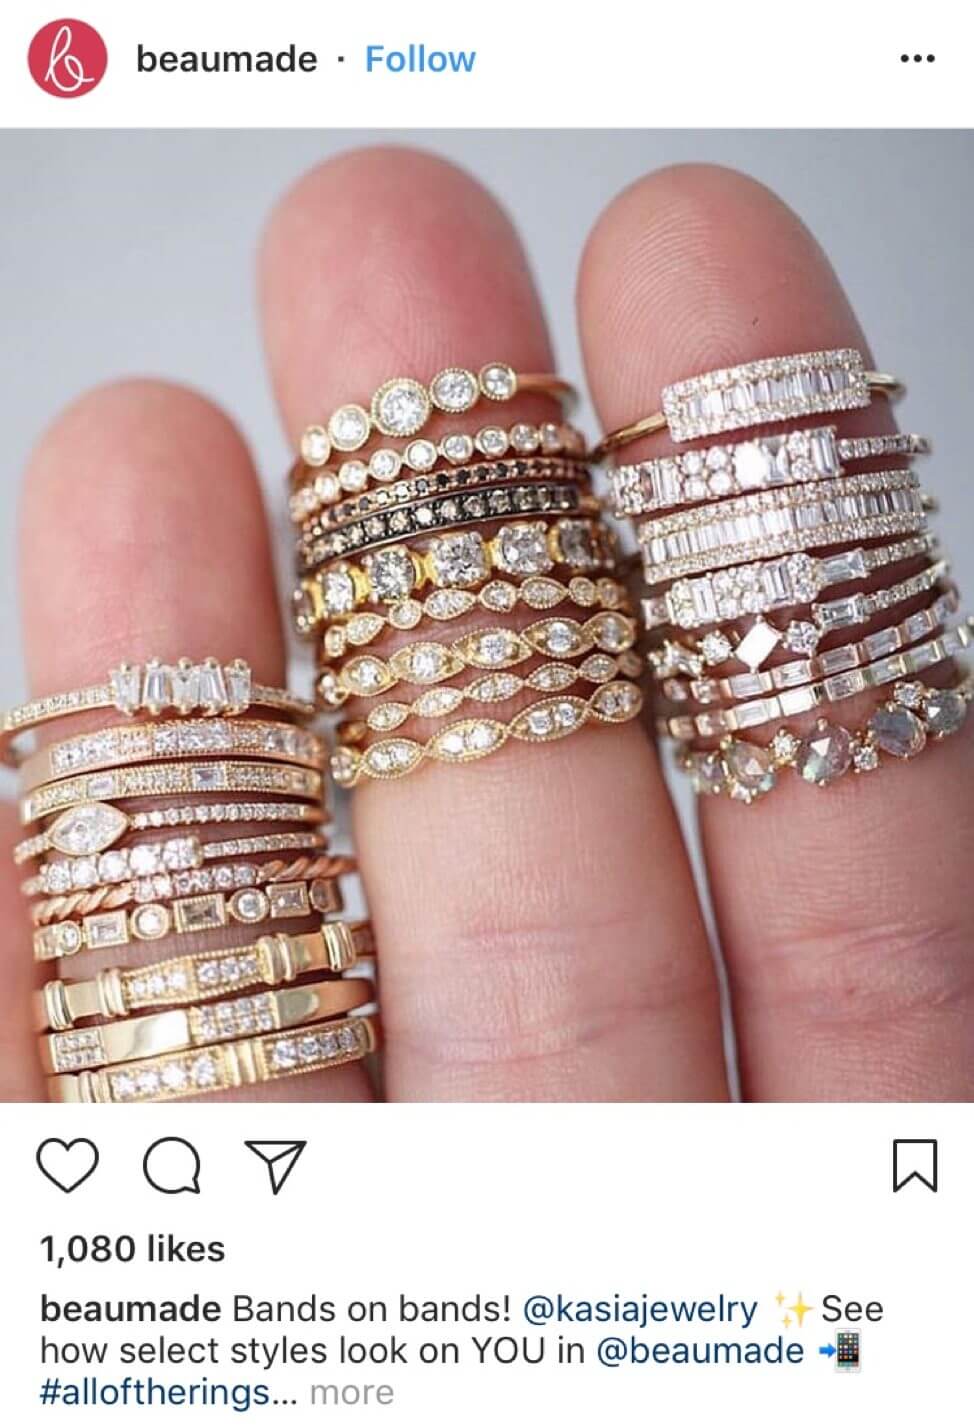 Instagram post of rings on fingers